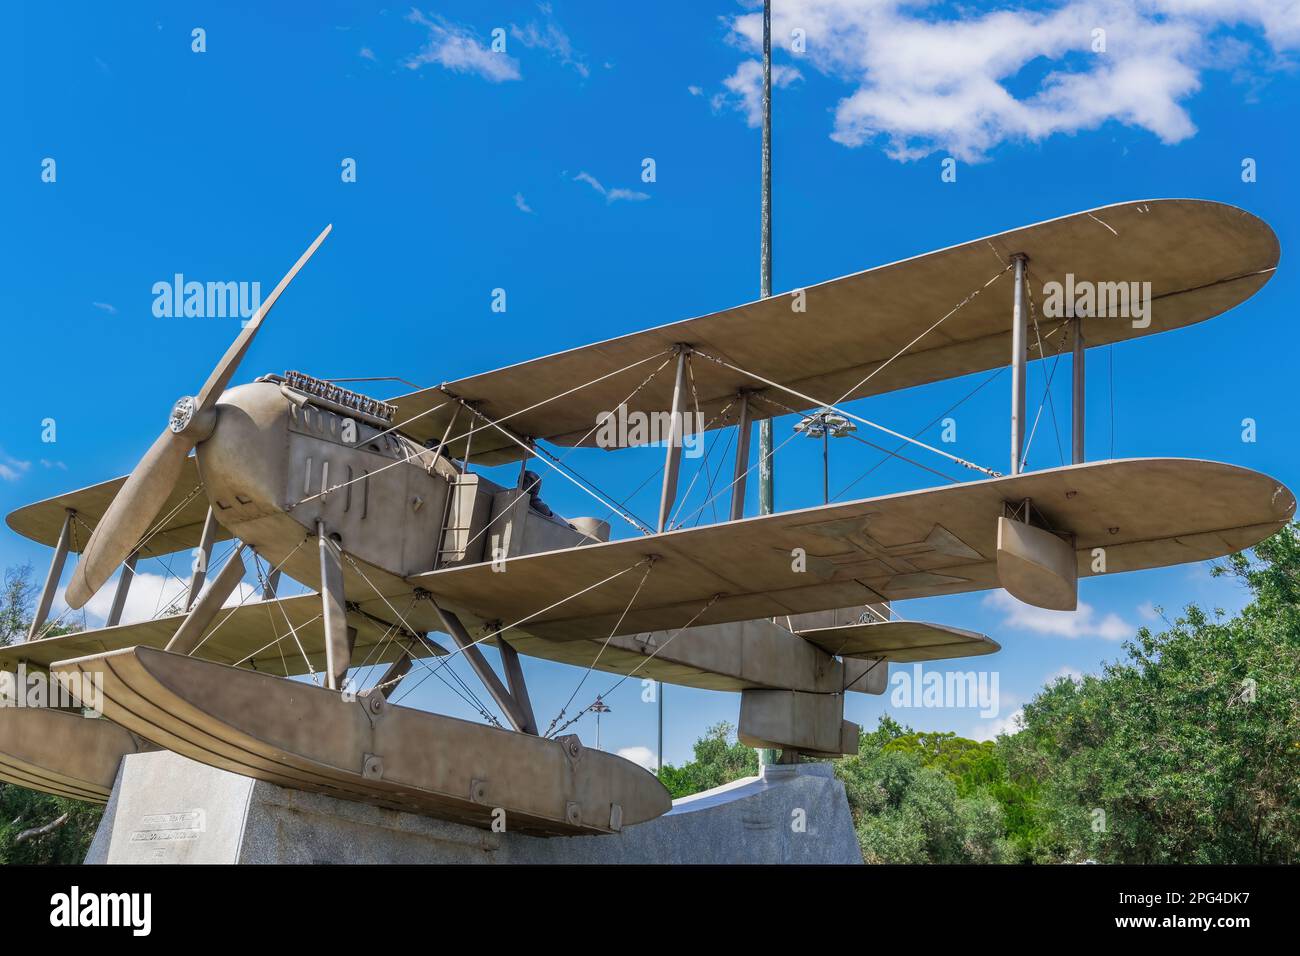 Lisbona, Portogallo Sud Trans-Atlantico traversata monumento di volo dagli aviatori portoghesi Gago Coutinho e Sacadura Cabral nel 1922 con replica biplanare. Foto Stock